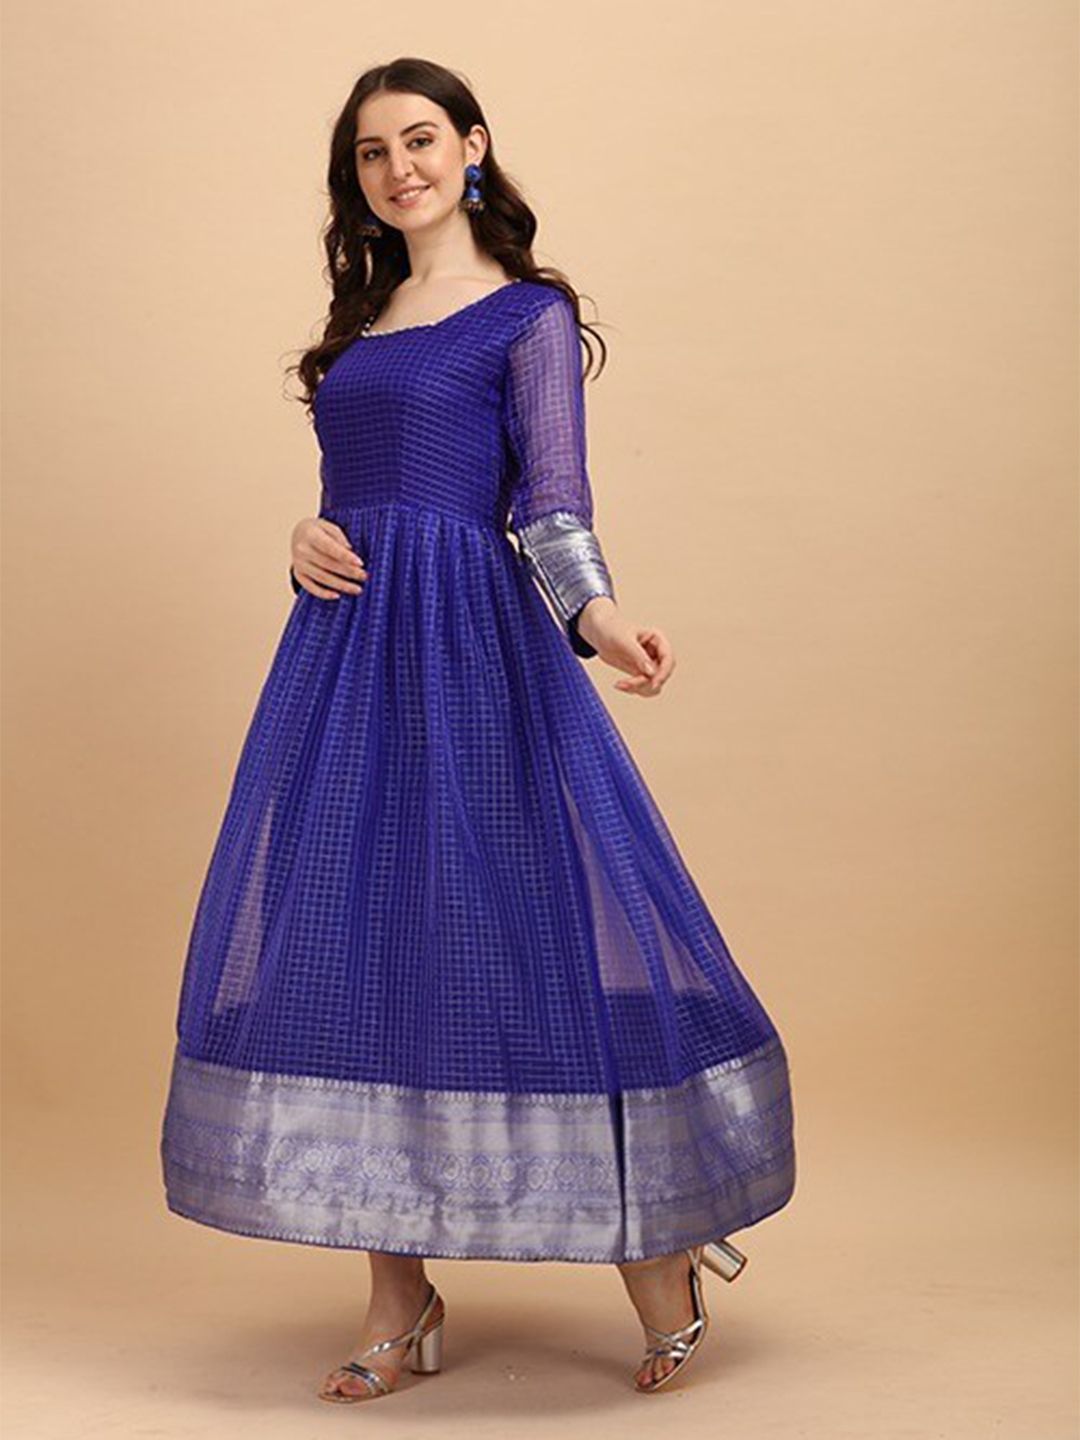 PRENEA Blue Checked Jacquard Ethnic Maxi Dress Price in India